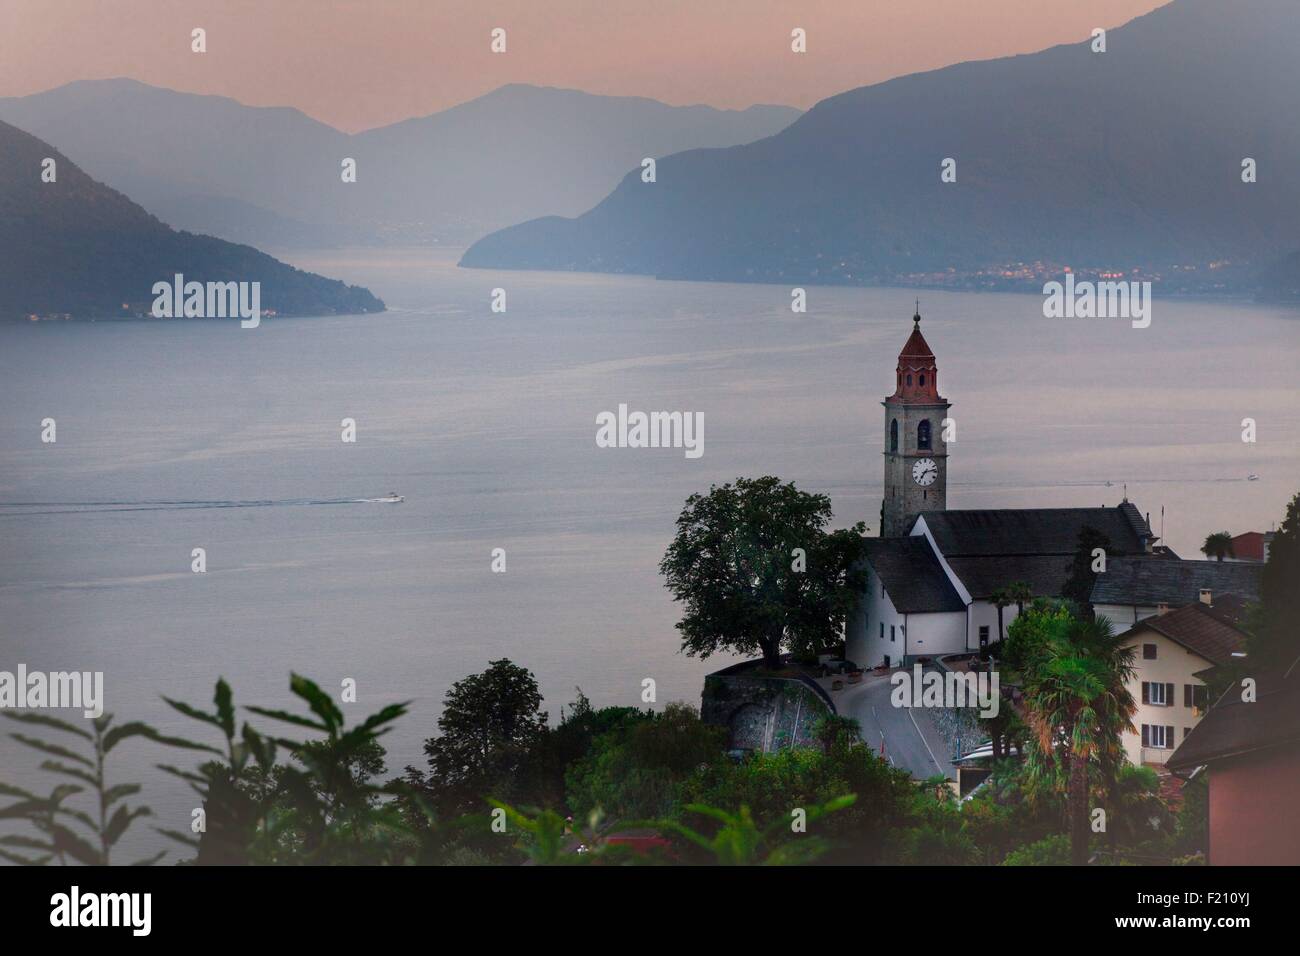 Switzerland, Lake Maggiore, Ticino, Locarno district, Ronco village and the Brissago Islands and Italy in the bacground Stock Photo